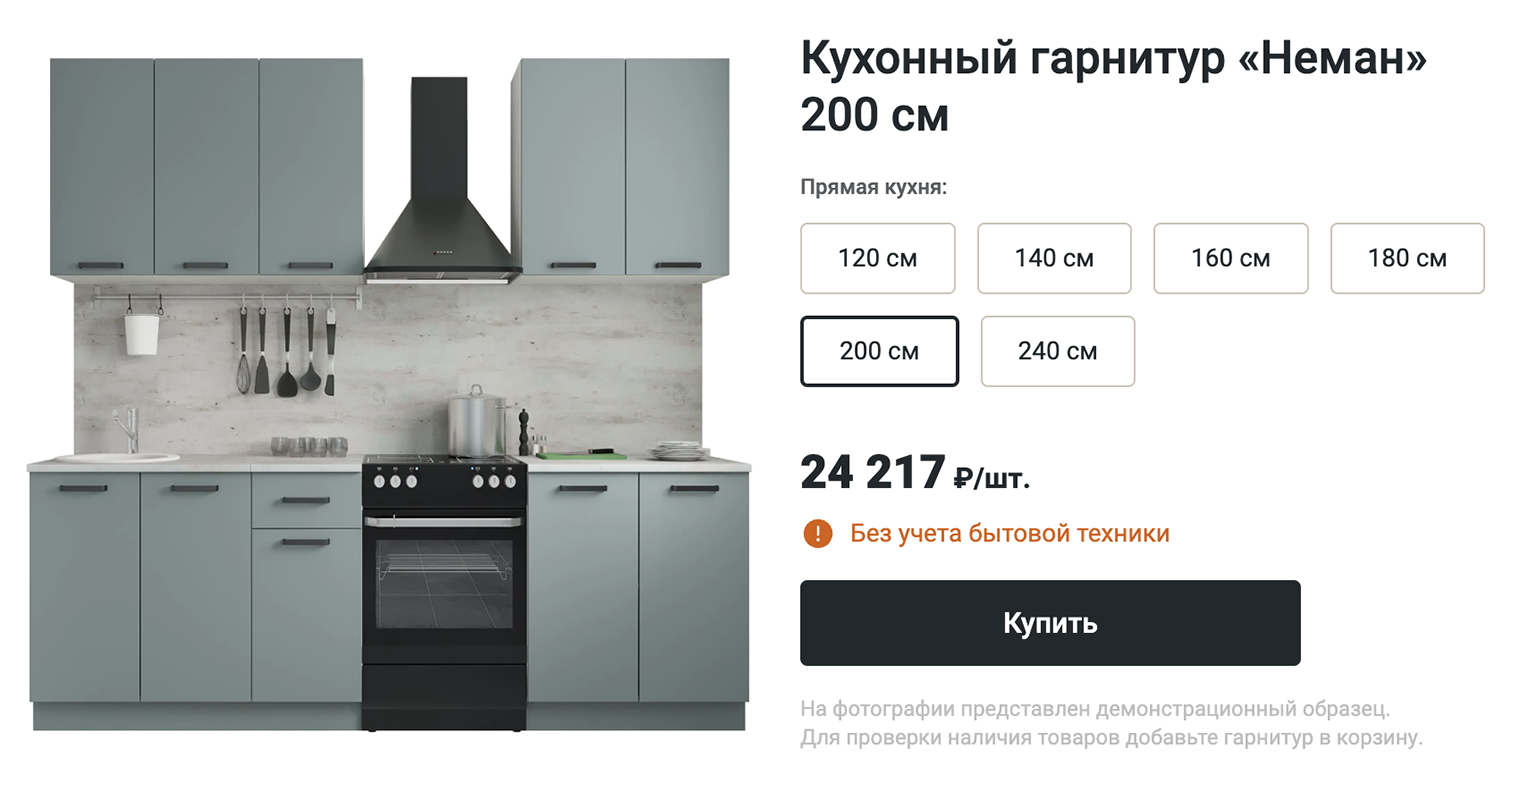 В Леруа есть не только белые кухни. Такая впишется и в мидсенчури, и в современный стиль. lemanapro.ru